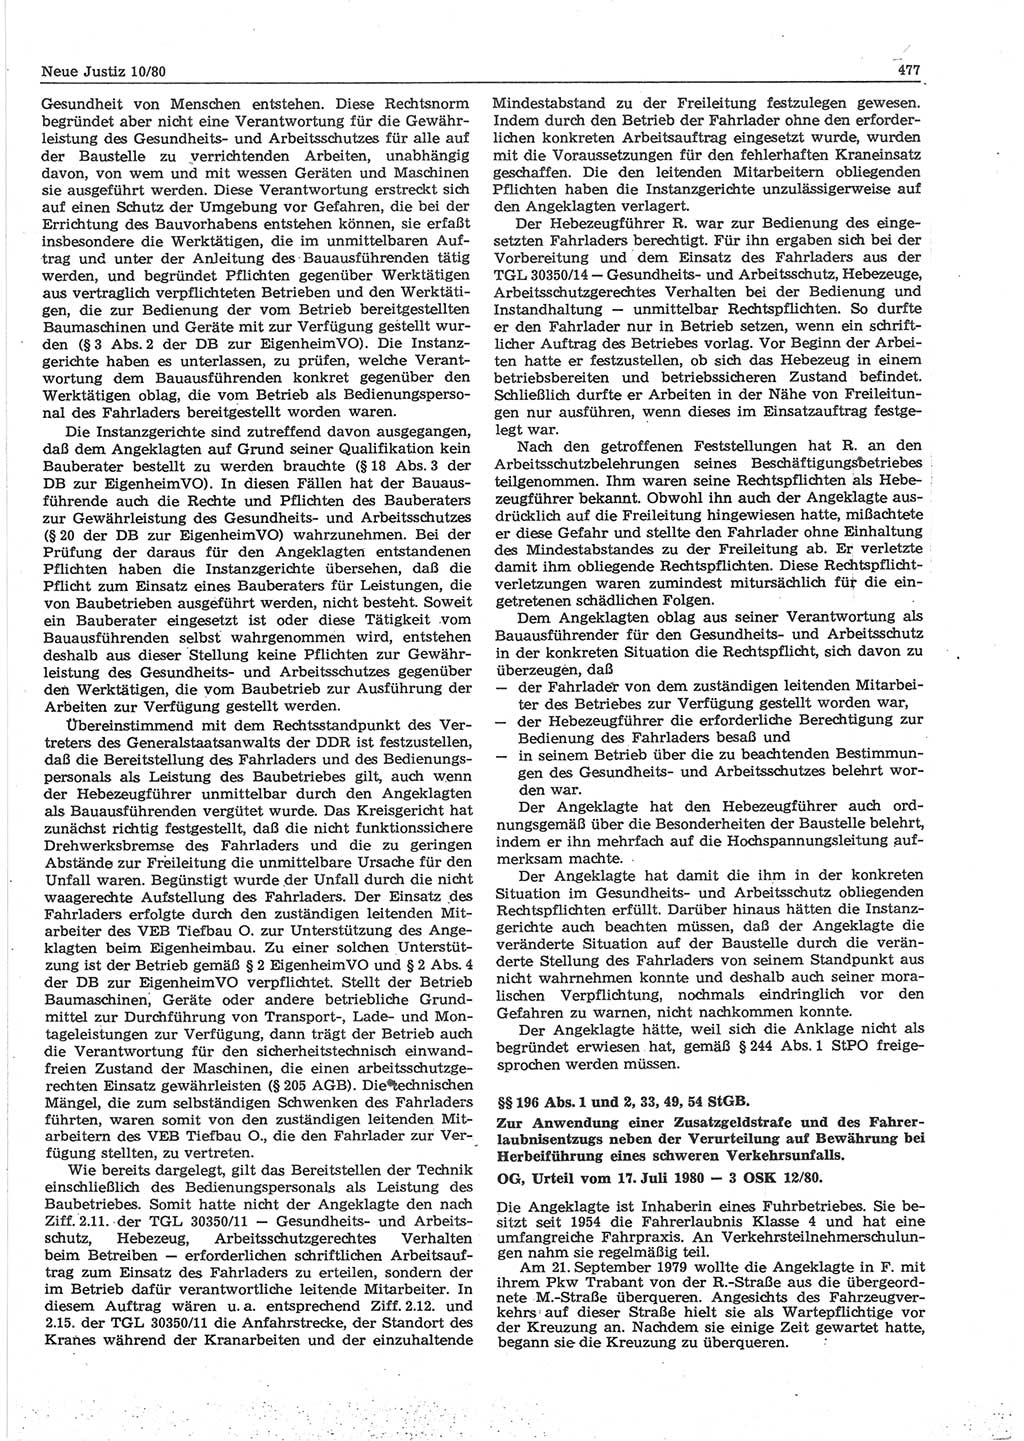 Neue Justiz (NJ), Zeitschrift für sozialistisches Recht und Gesetzlichkeit [Deutsche Demokratische Republik (DDR)], 34. Jahrgang 1980, Seite 477 (NJ DDR 1980, S. 477)